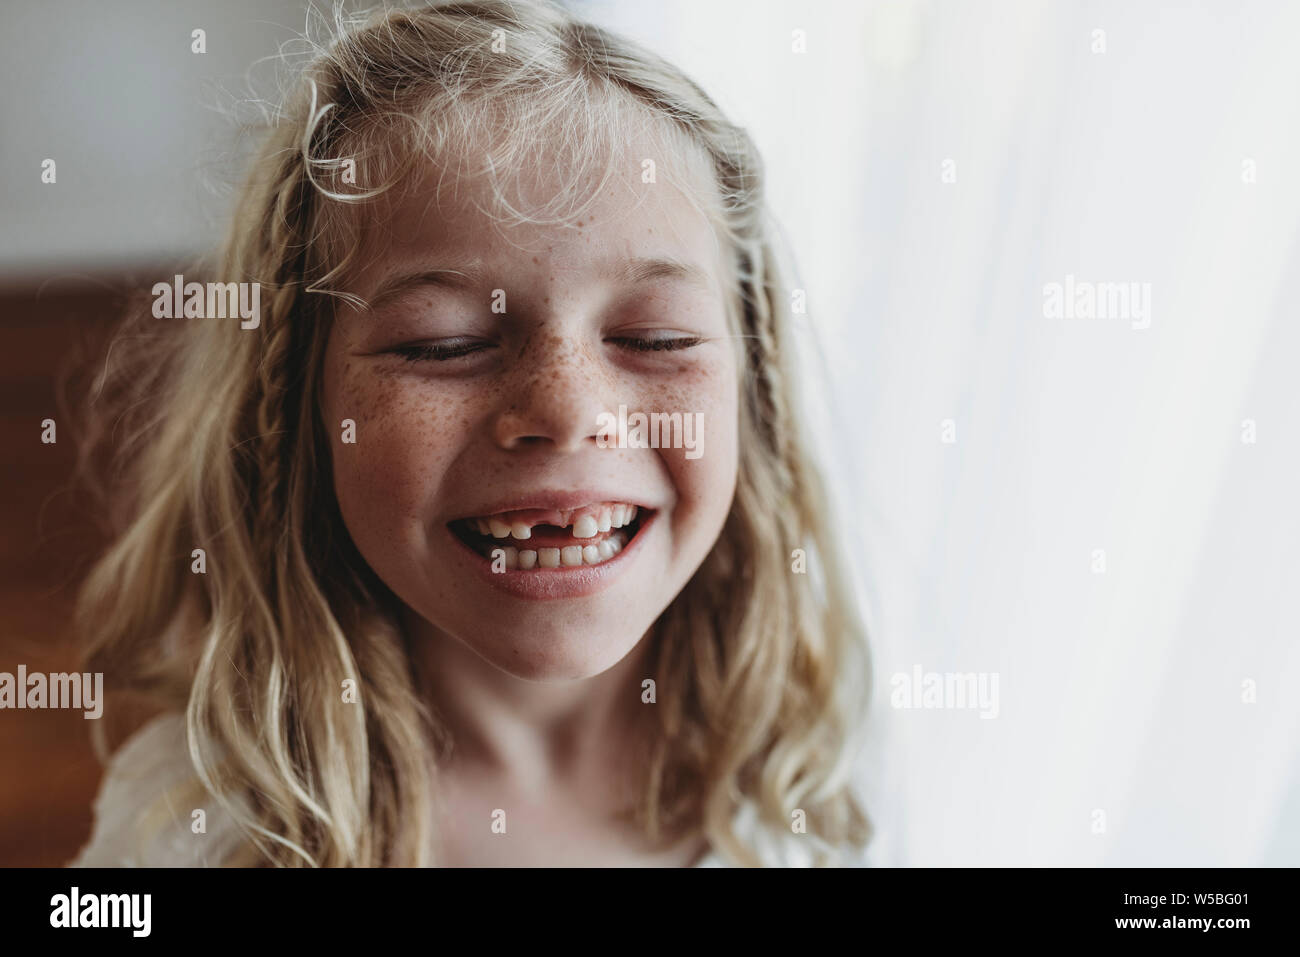 Ritratto di giovane freckled sorridente ragazza dente mancante con gli occhi chiusi Foto Stock